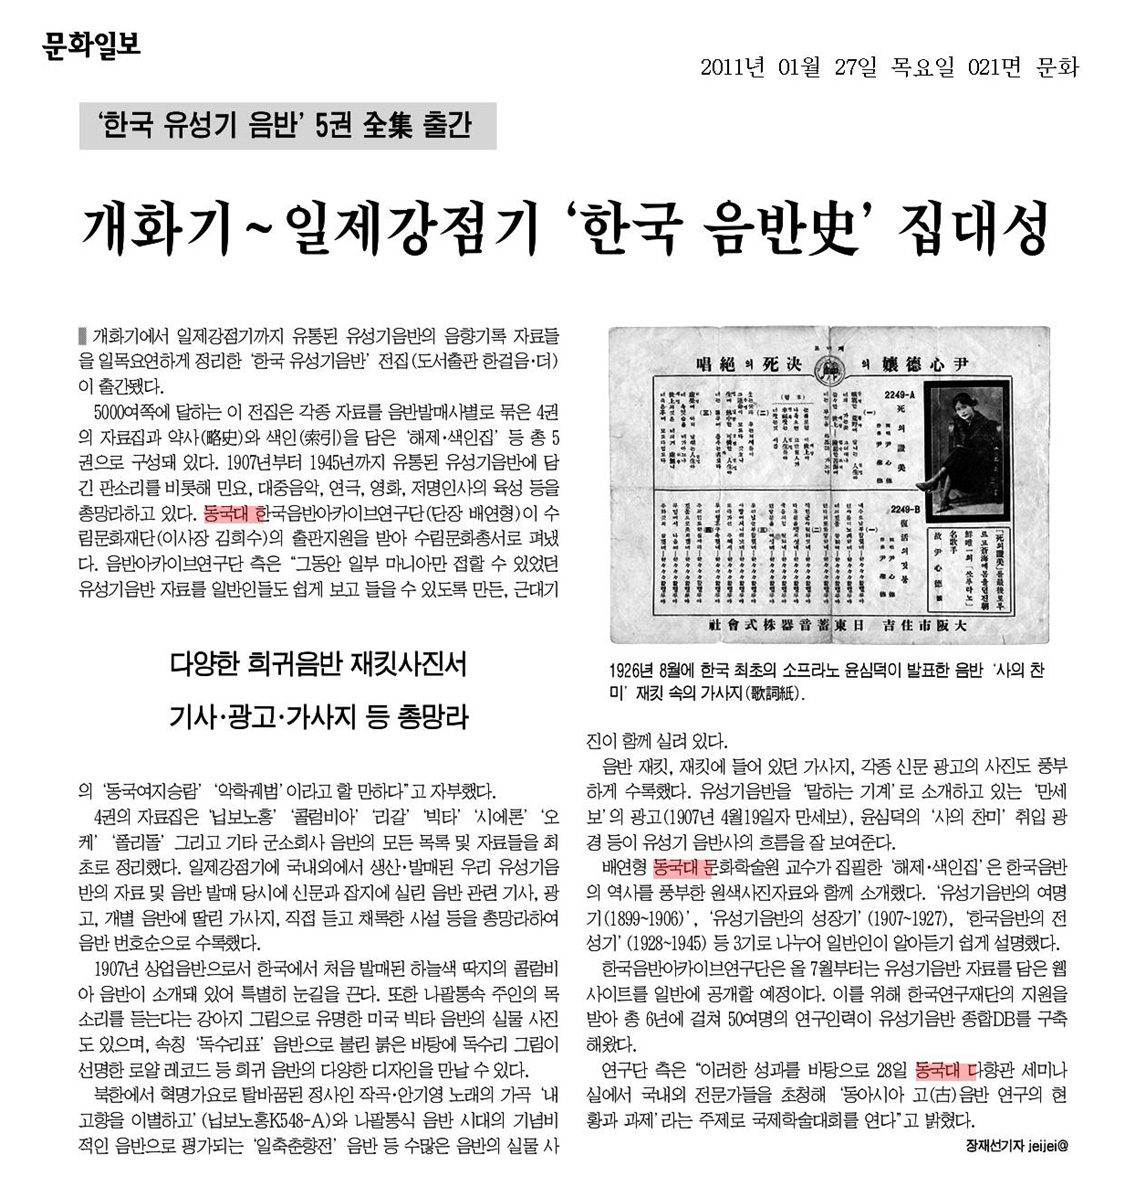 2011-01-28-문화일보-개화기~일제강점기 한국음반사 집대성.jpg